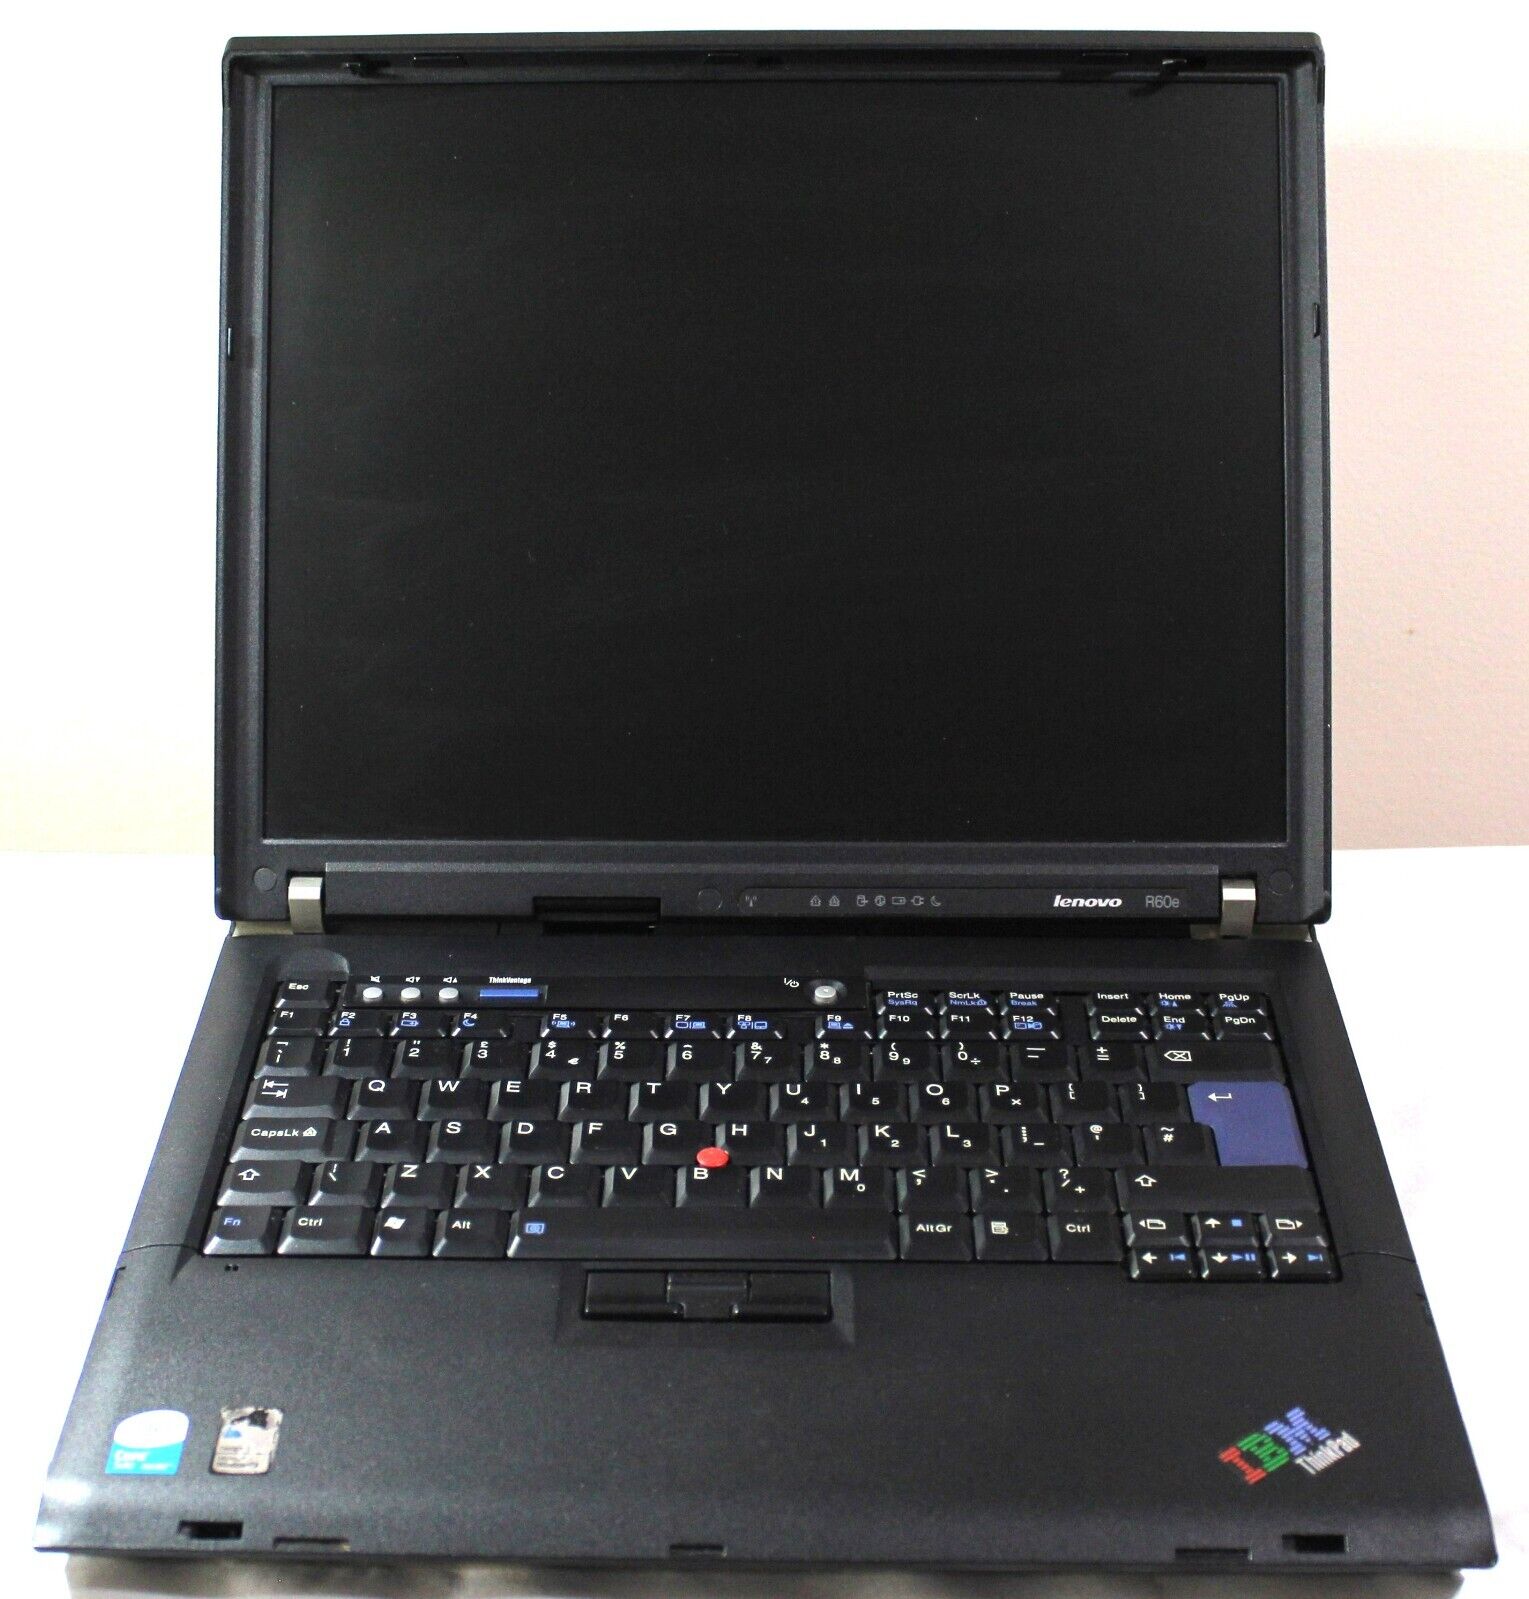 IBM Lenovo ThinkPad R60e, Black,15'', Intel Core Solo, HDD, 